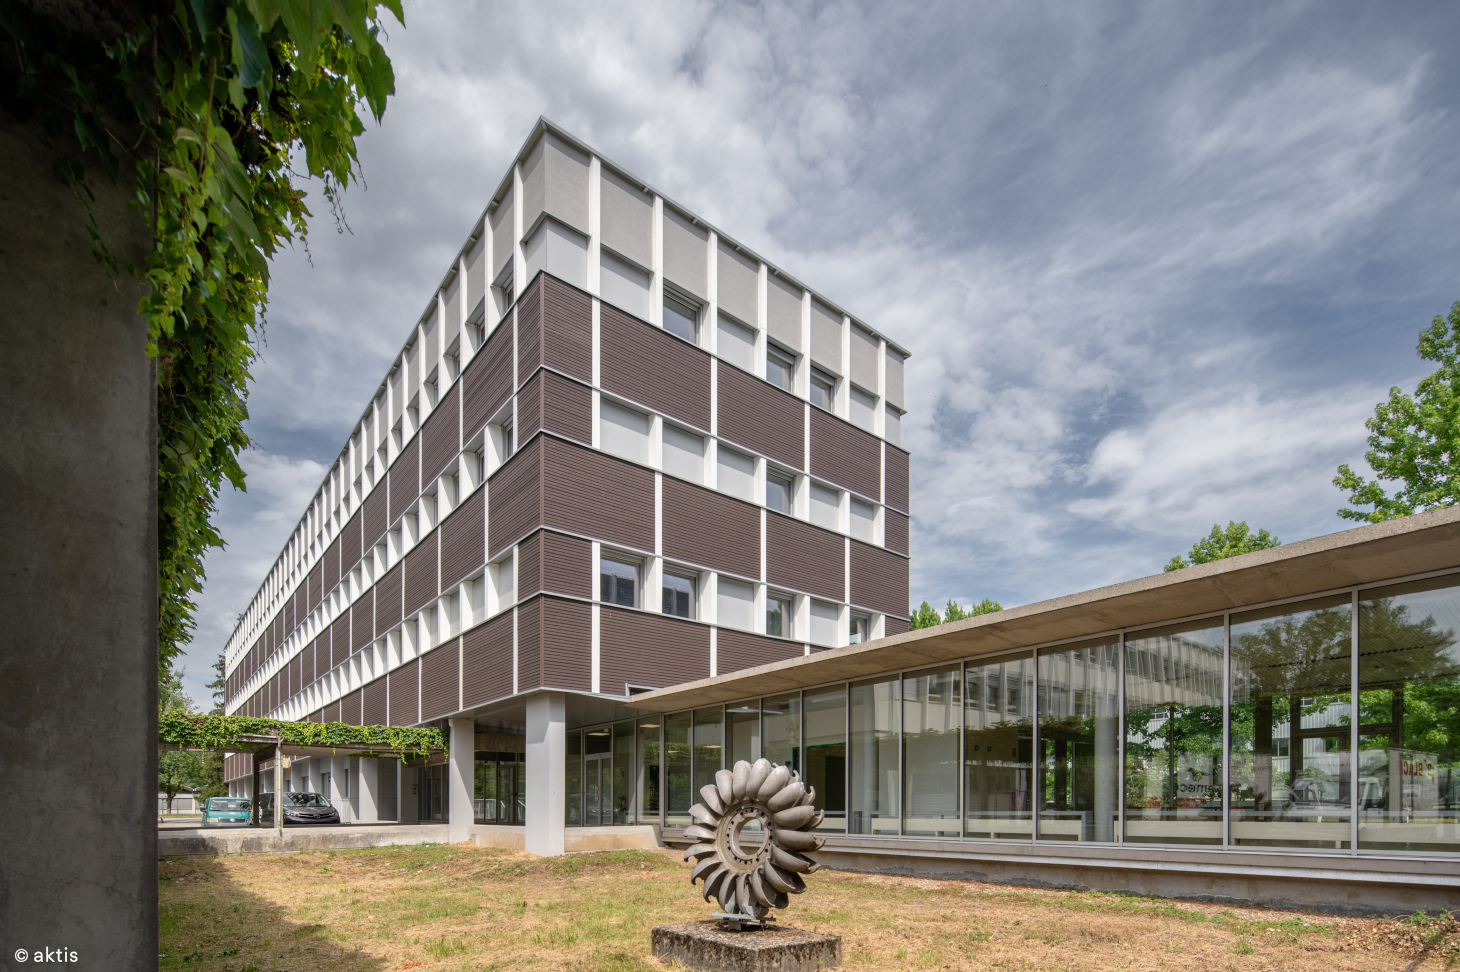 Les bâtiments Bergès accueillant désormais le « Pôle de l’éducation » au cœur du campus de Saint-Martin-d’Hères/Gières